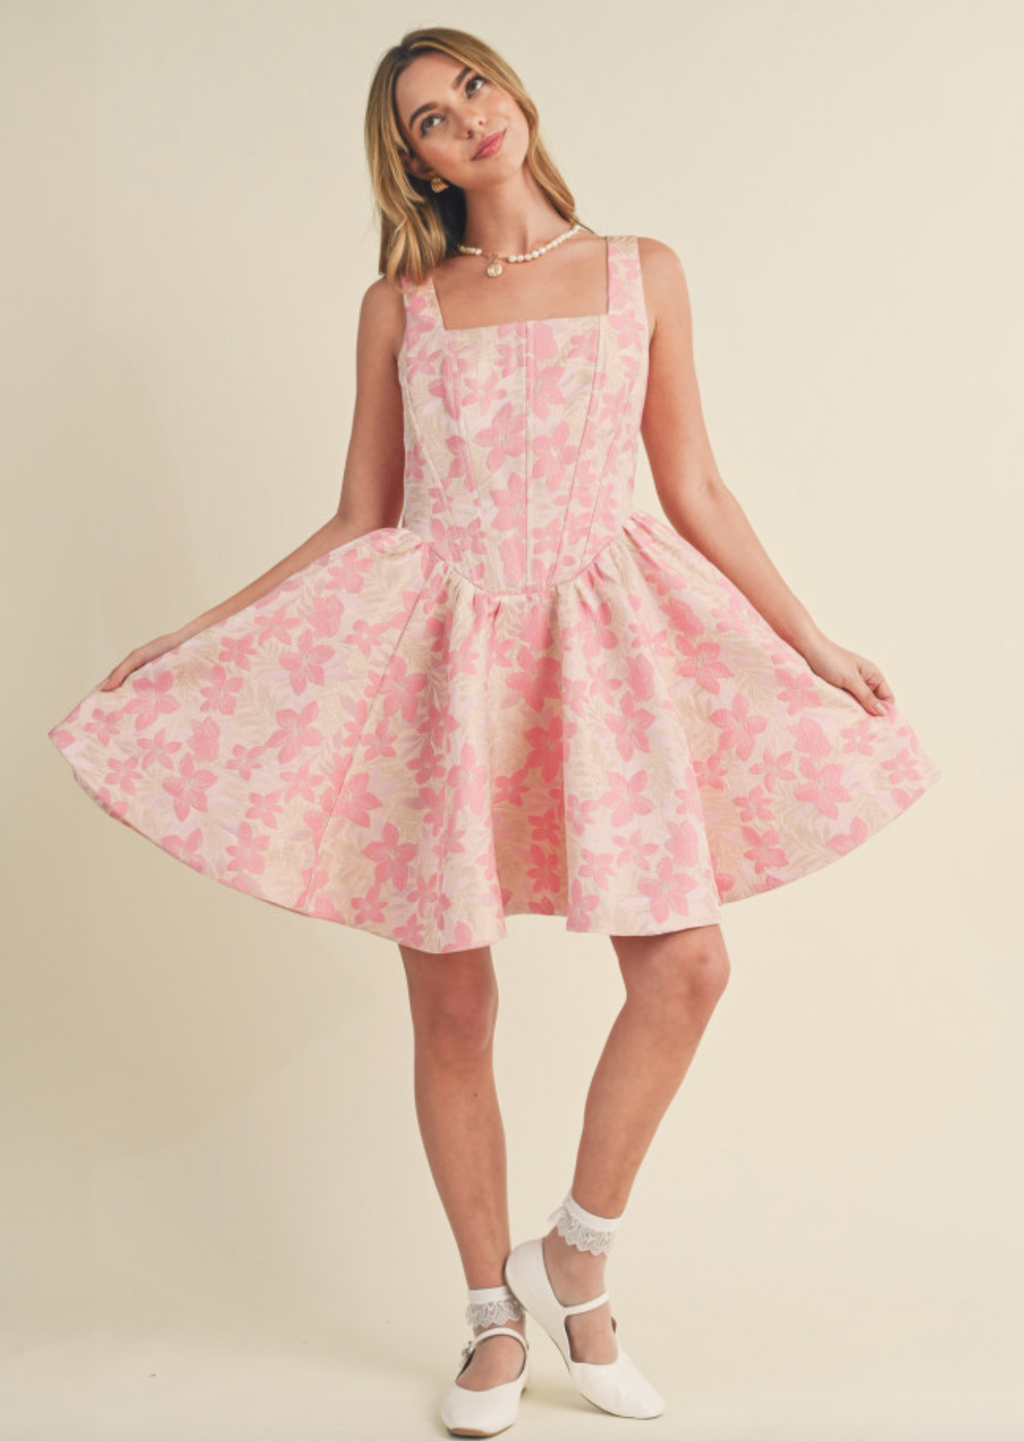 Spring Blossom's Dress